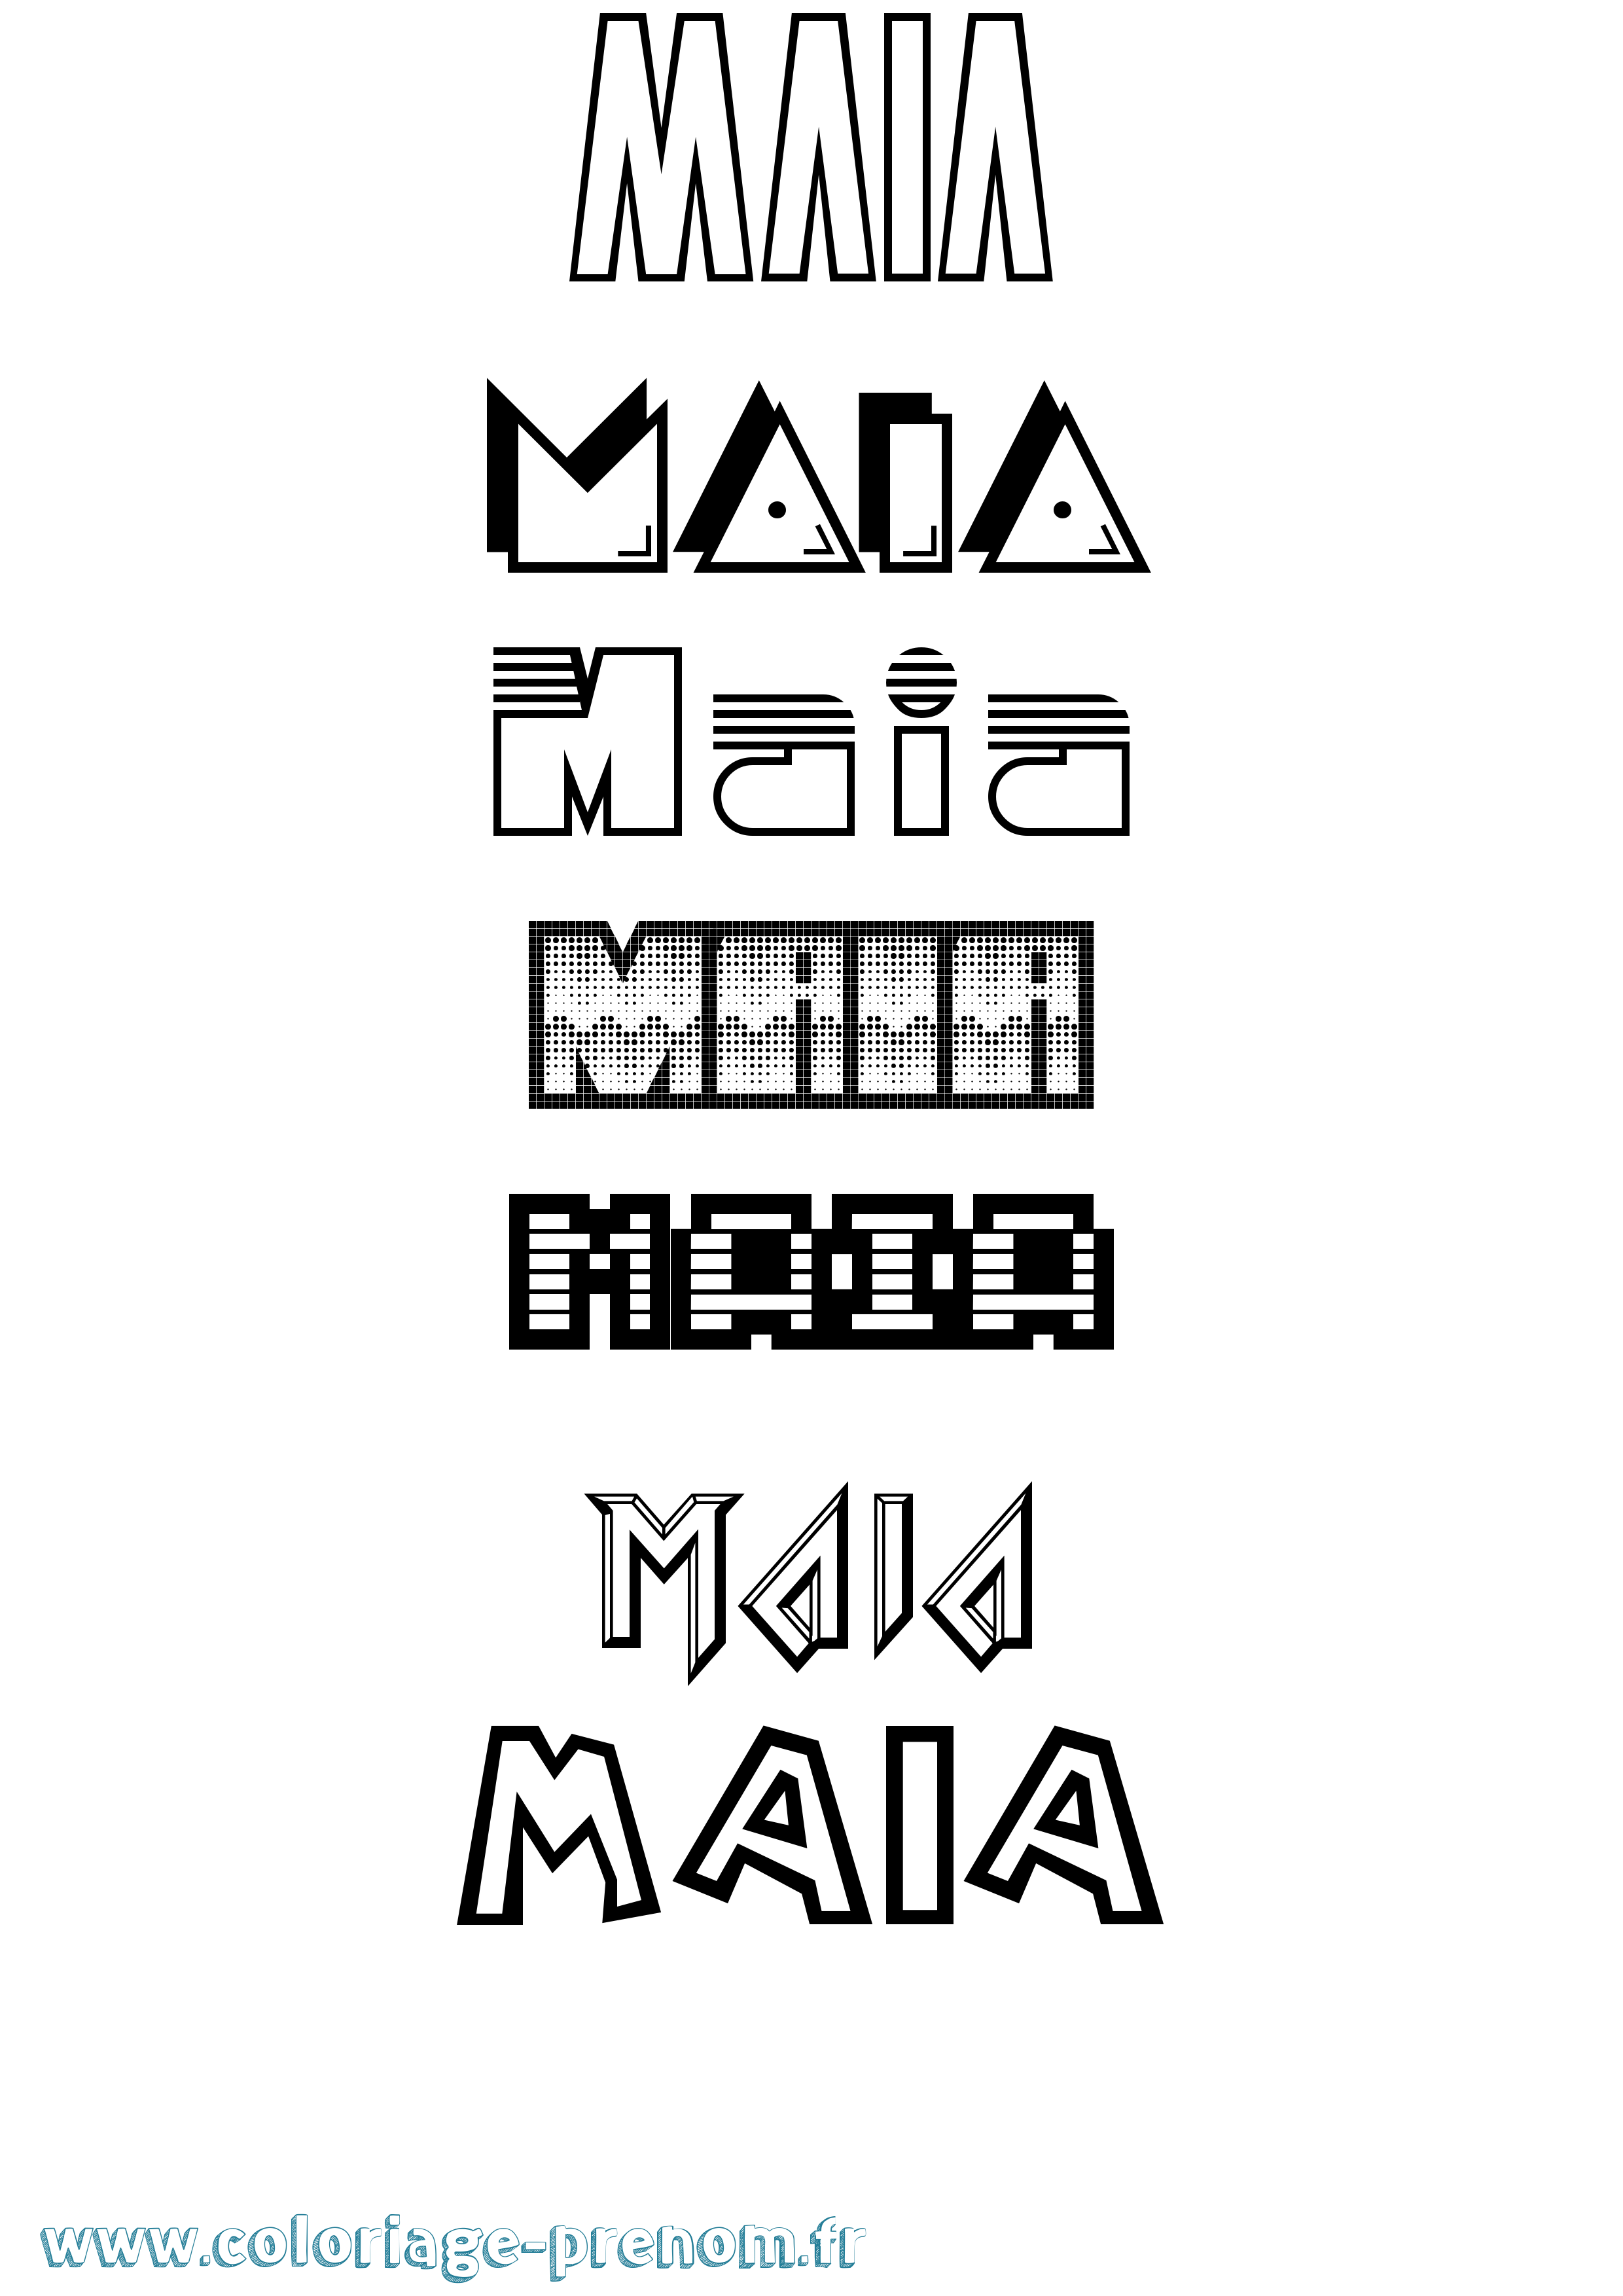 Coloriage prénom Maia